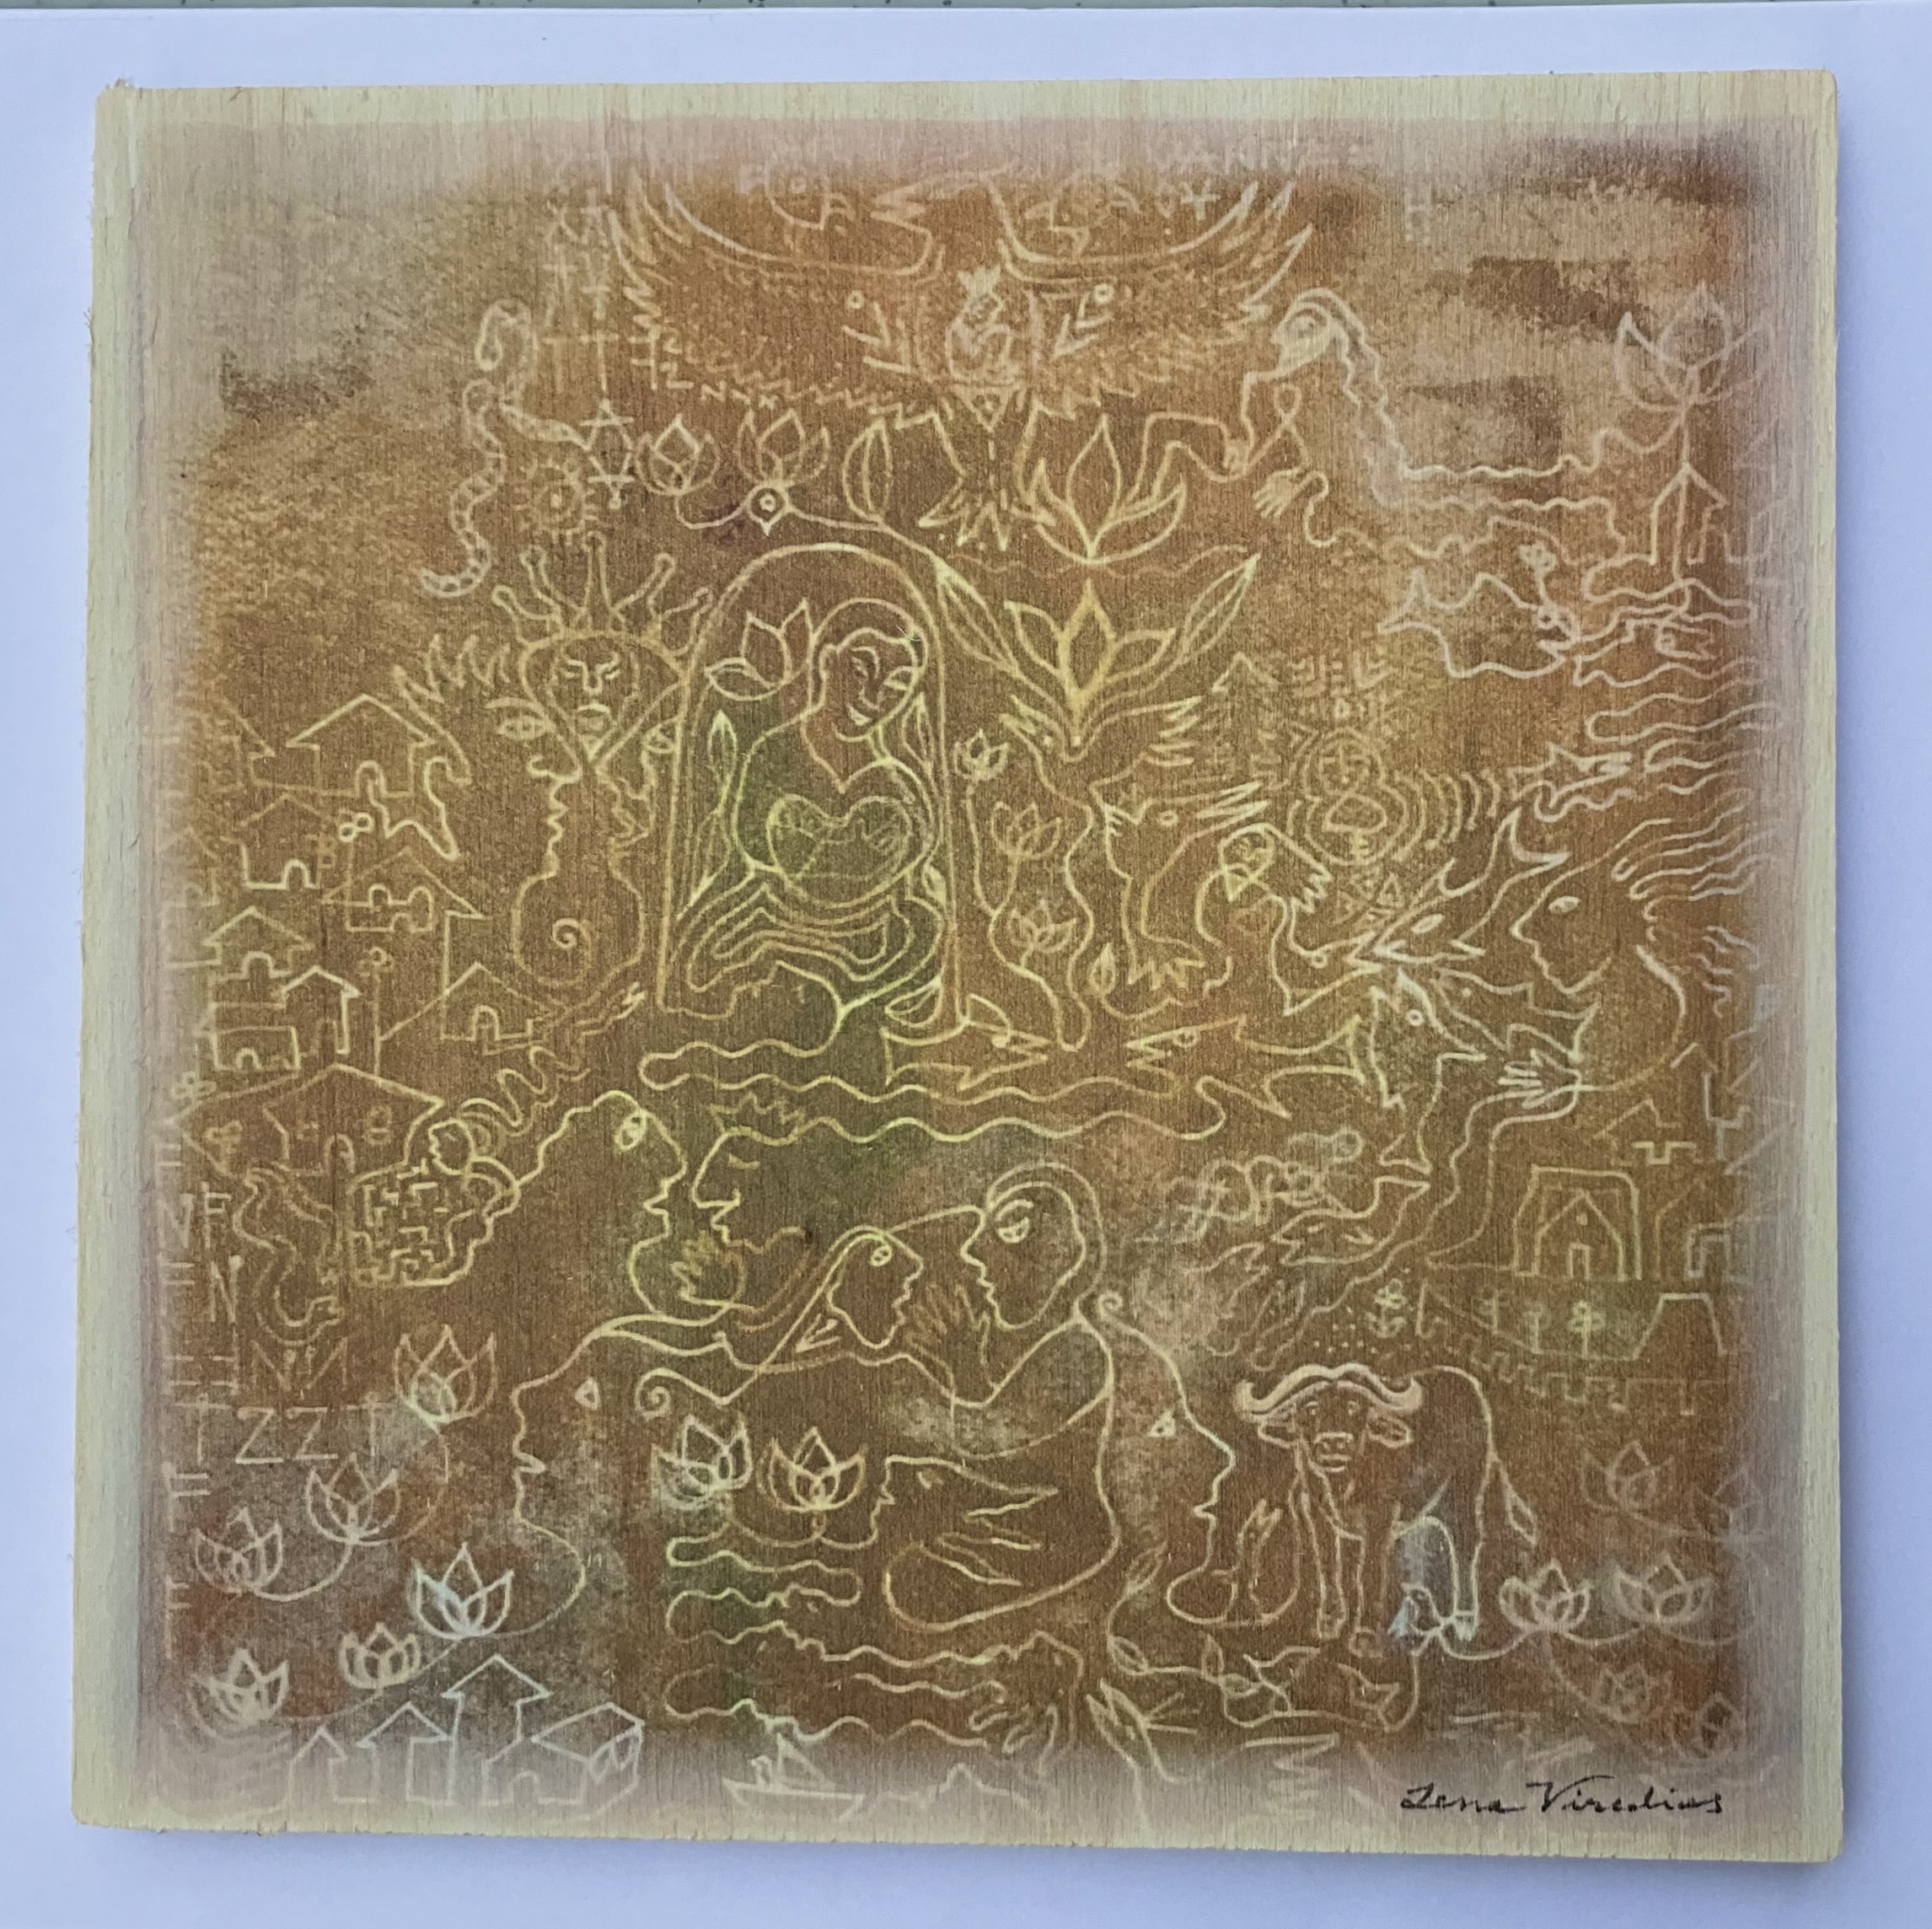 Målning * GARDEN * av Lena Viredius tryckt på liten träplatta 20x20 cm